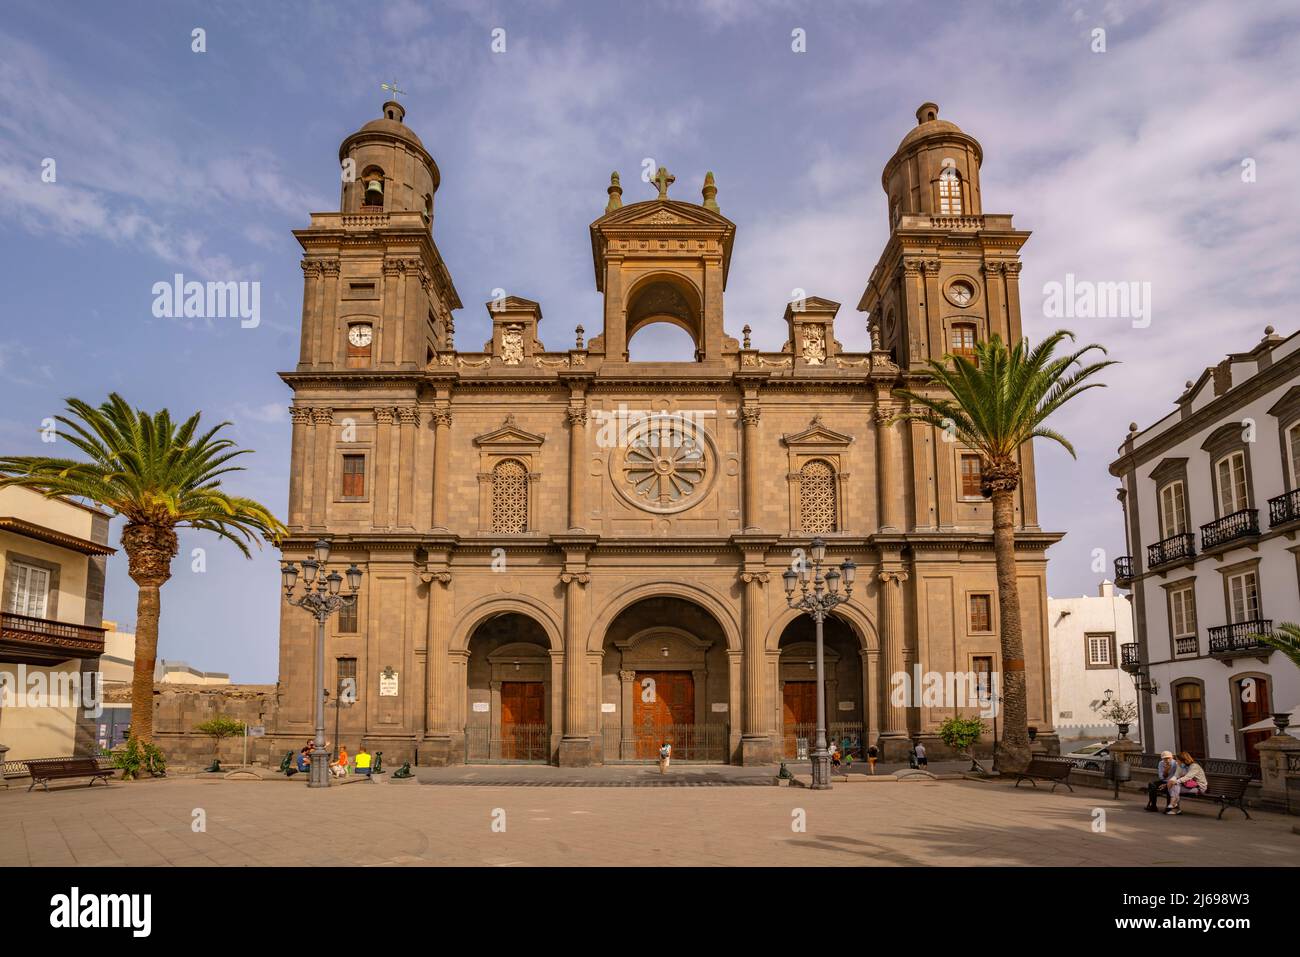 Blick auf die Kathedrale Santa Ana, Plaza de Santa Ana, Las Palmas de Gran Canaria, Gran Canaria, Kanarische Inseln, Spanien, Atlantik, Europa Stockfoto